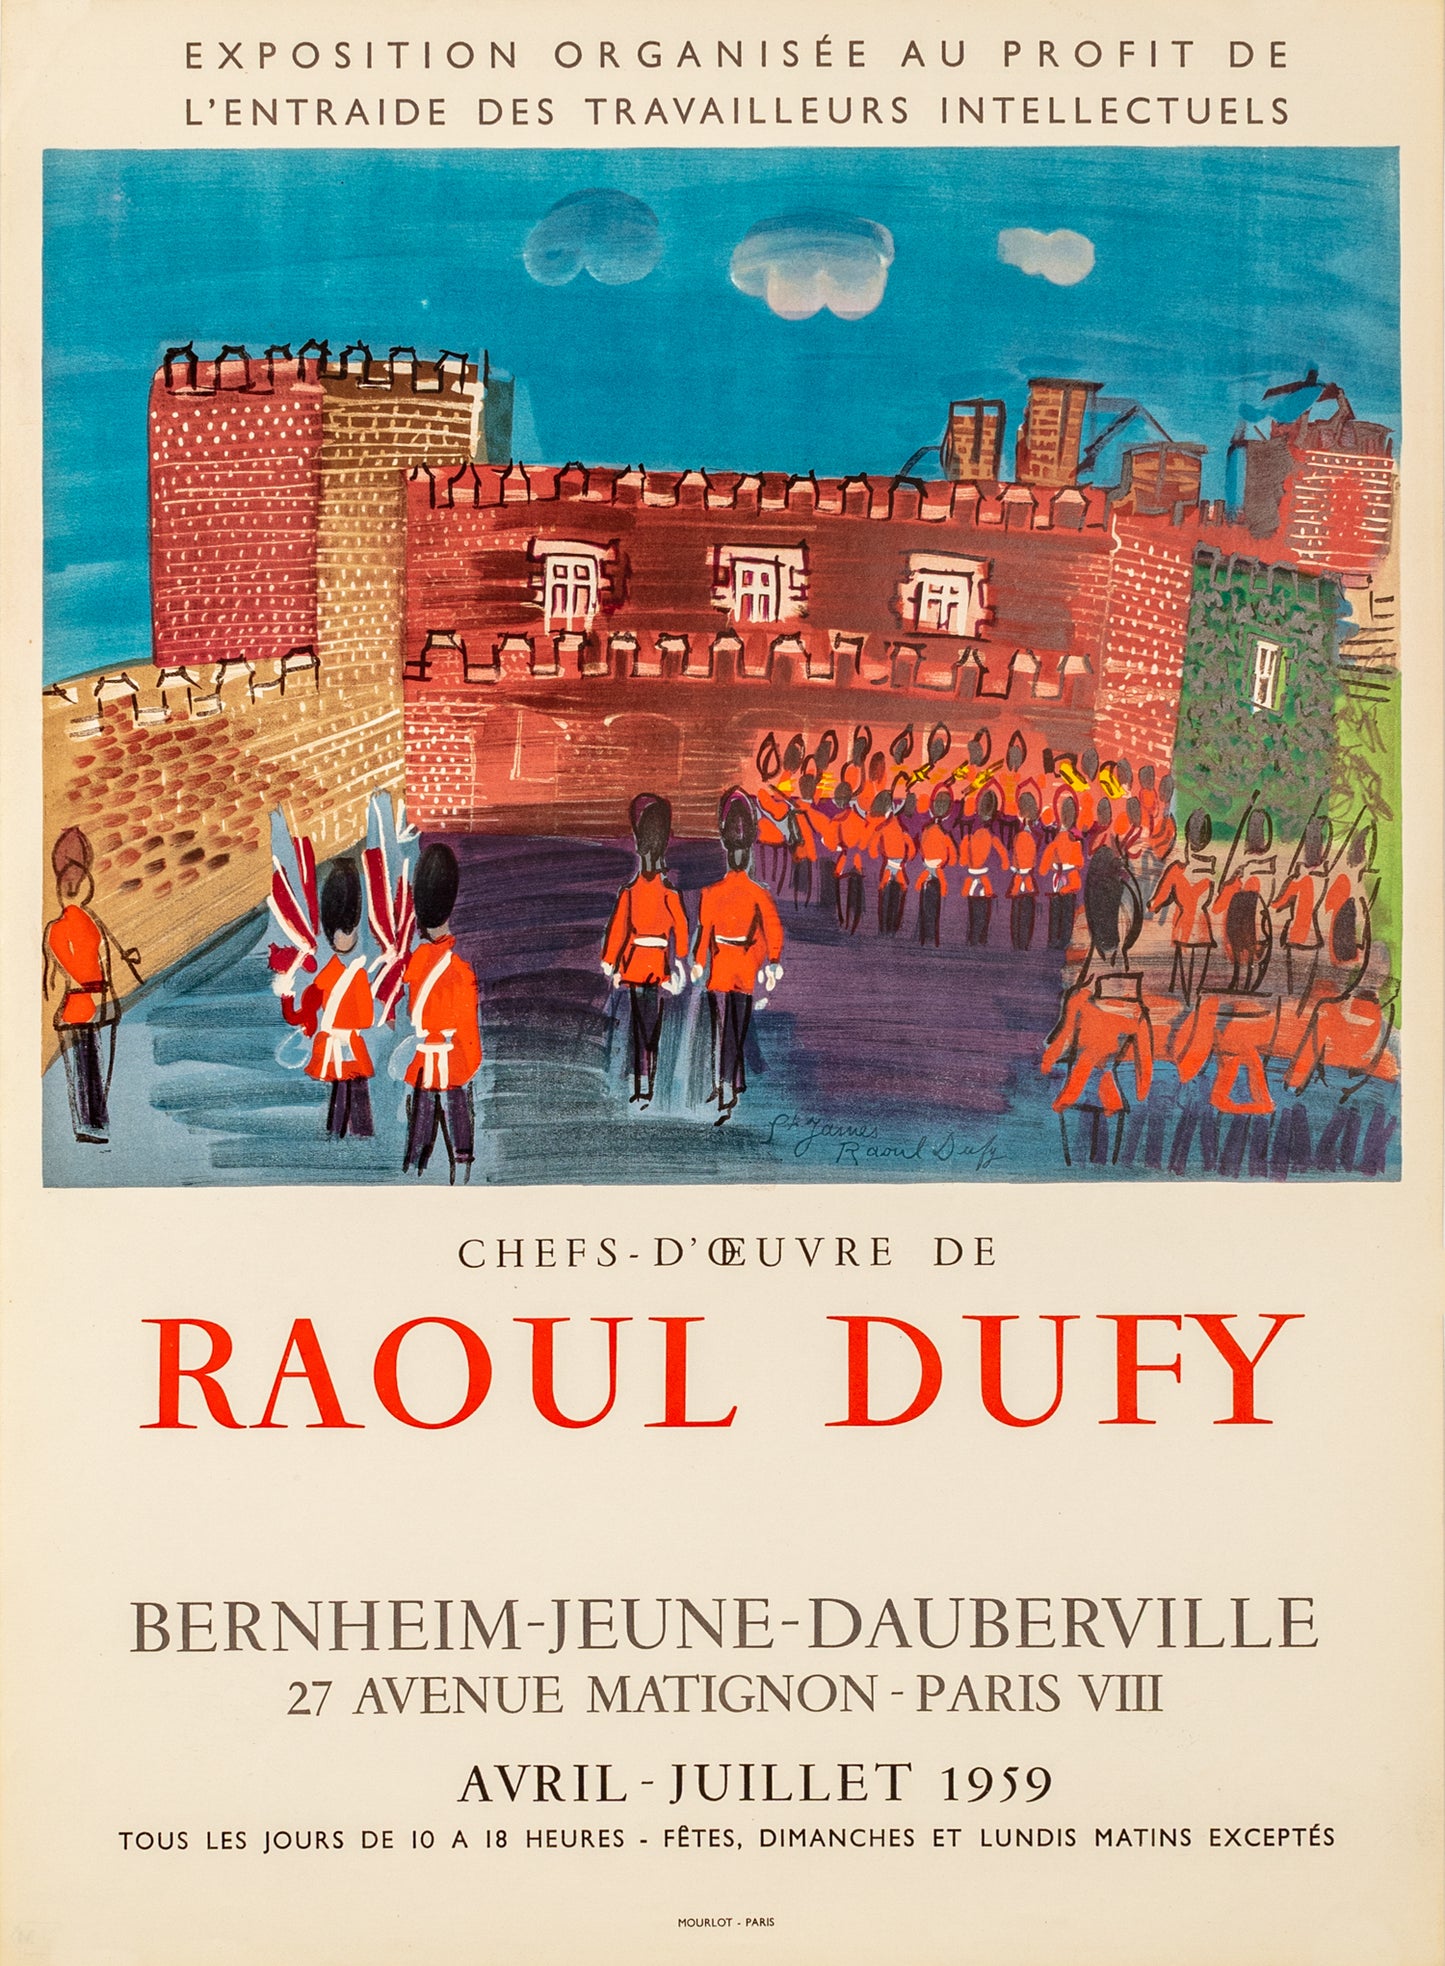 Chefs-D'Oeuvres - Bernheim-Jeune-Dauberville (after) Raoul Dufy, 1959